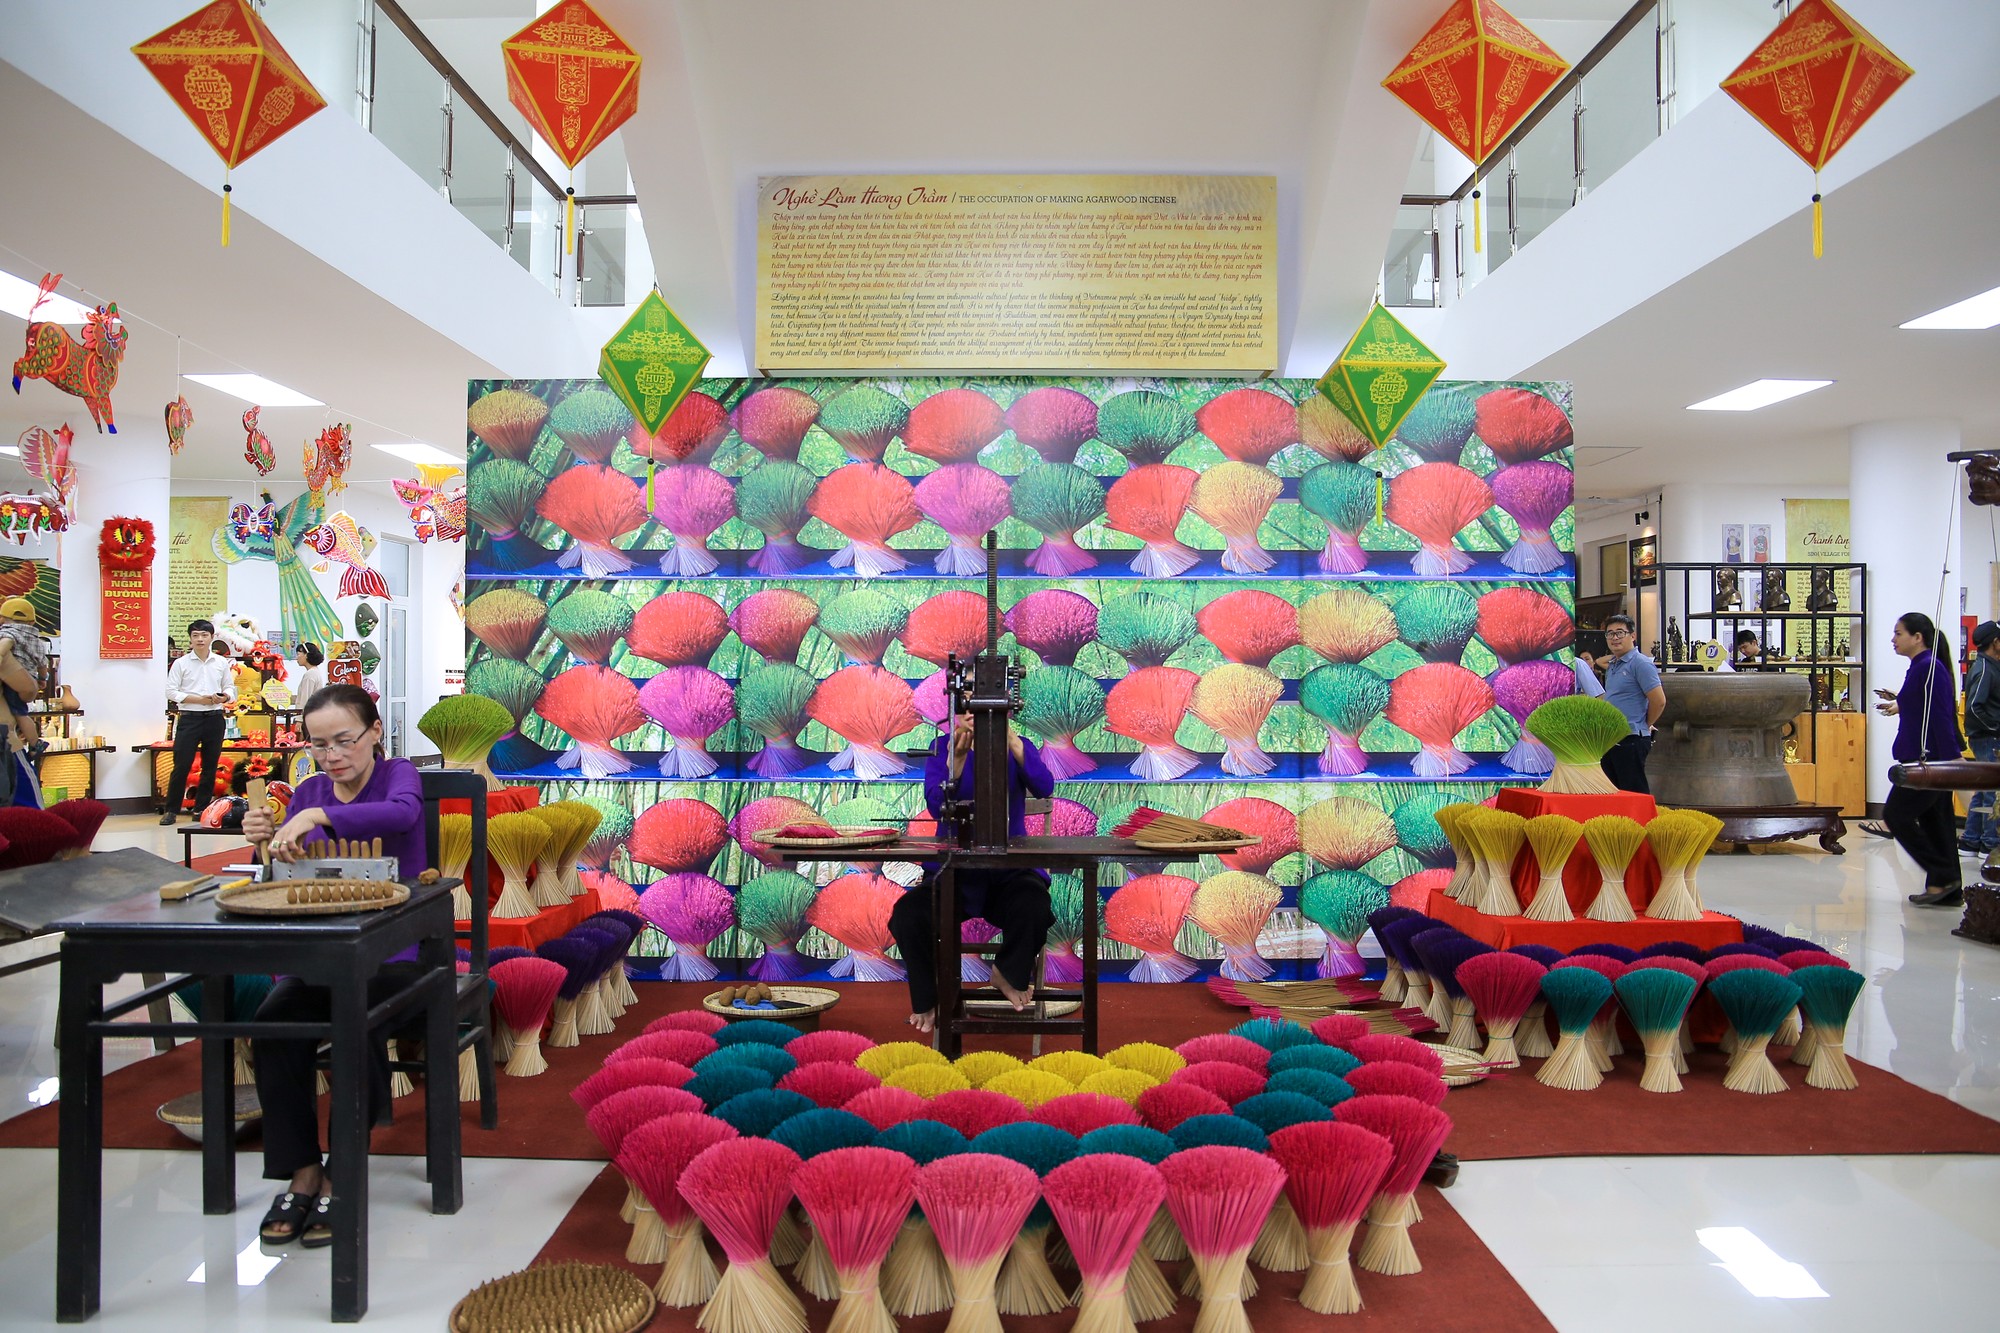 Tối 16/1, Trung tâm Văn hóa, Thông tin và Thể thao TP Huế (tỉnh Thừa Thiên Huế) tổ chức khai mạc không gian trưng bày, giới thiệu sản phẩm và trình diễn nghề truyền thống Huế.